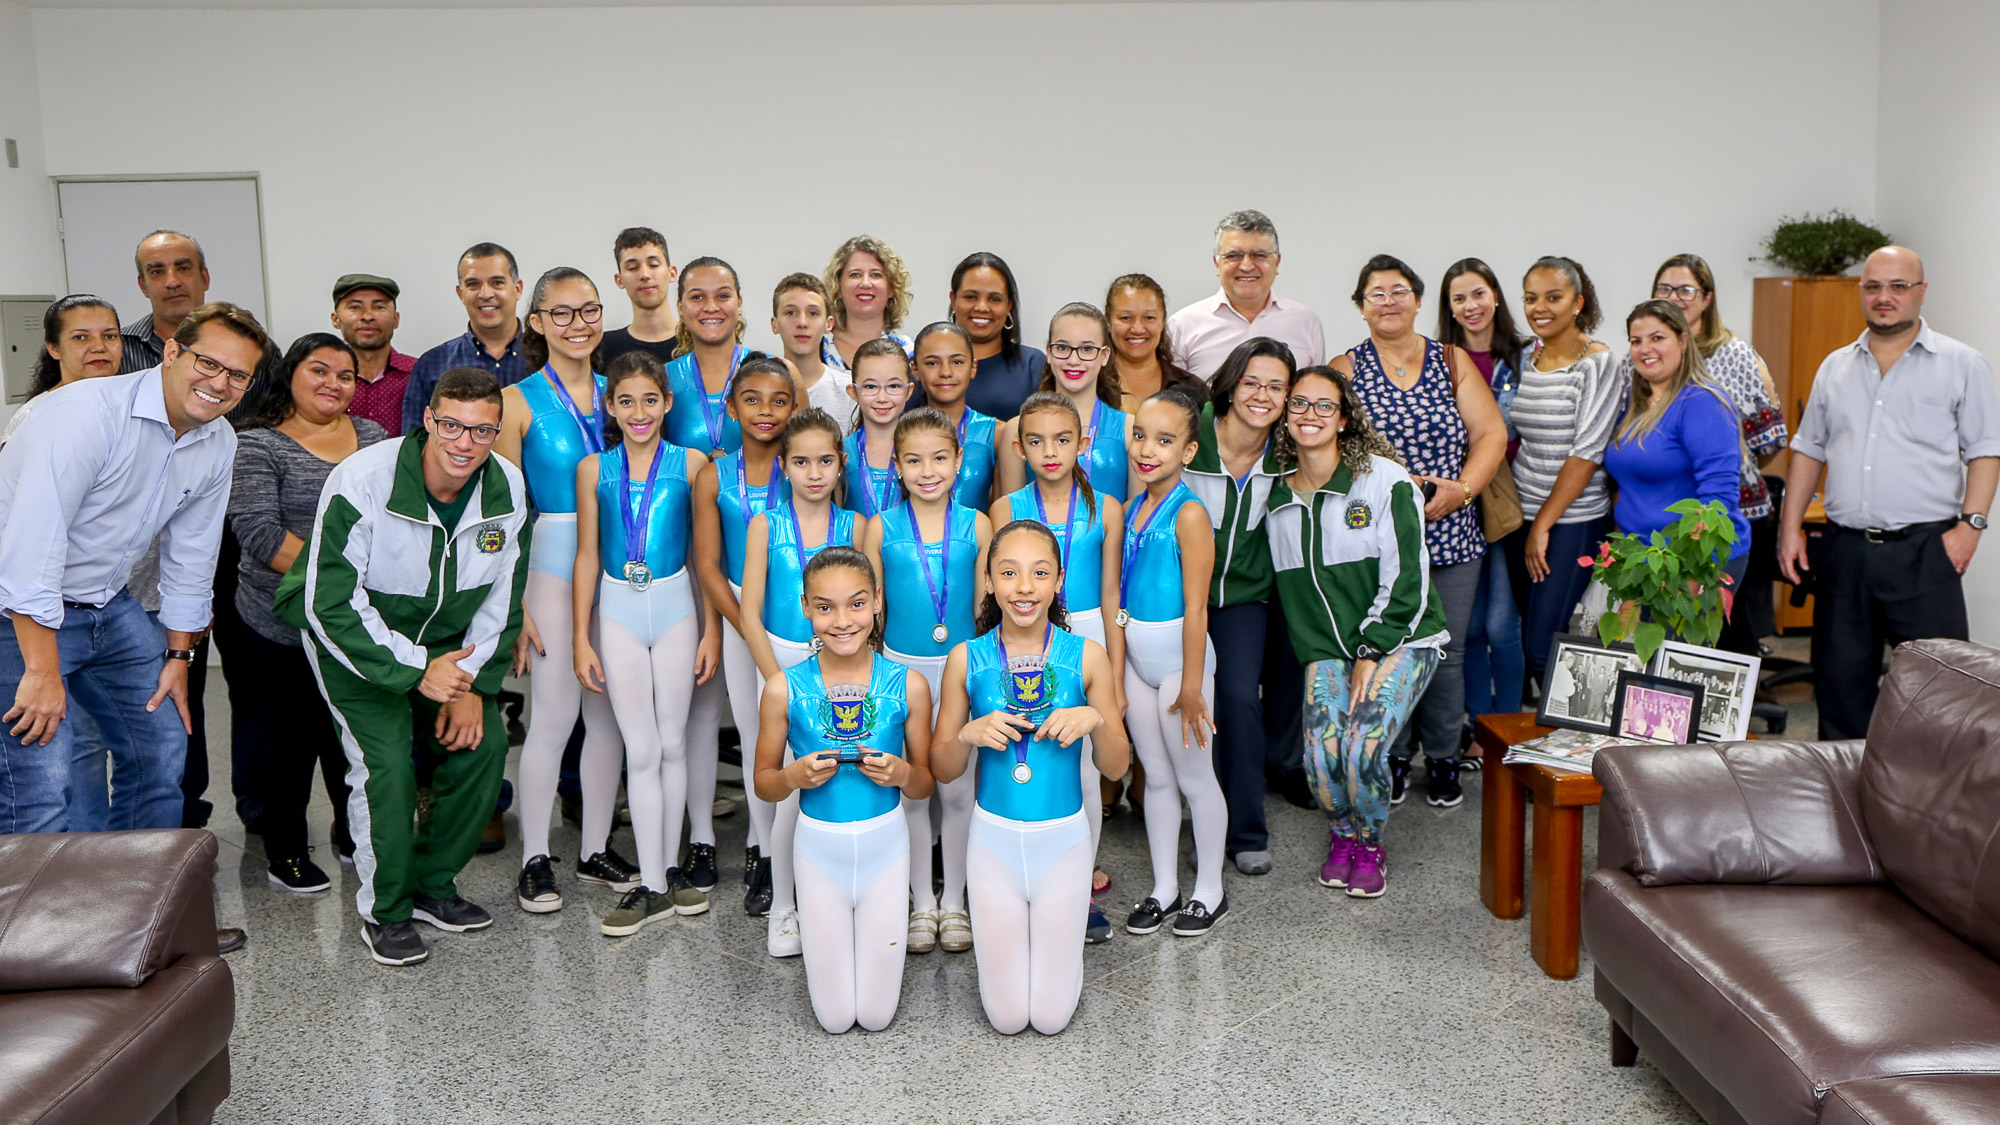 notícia Prefeito Junior Finamore recebe medalhistas da Ginastica Artística no gabinete